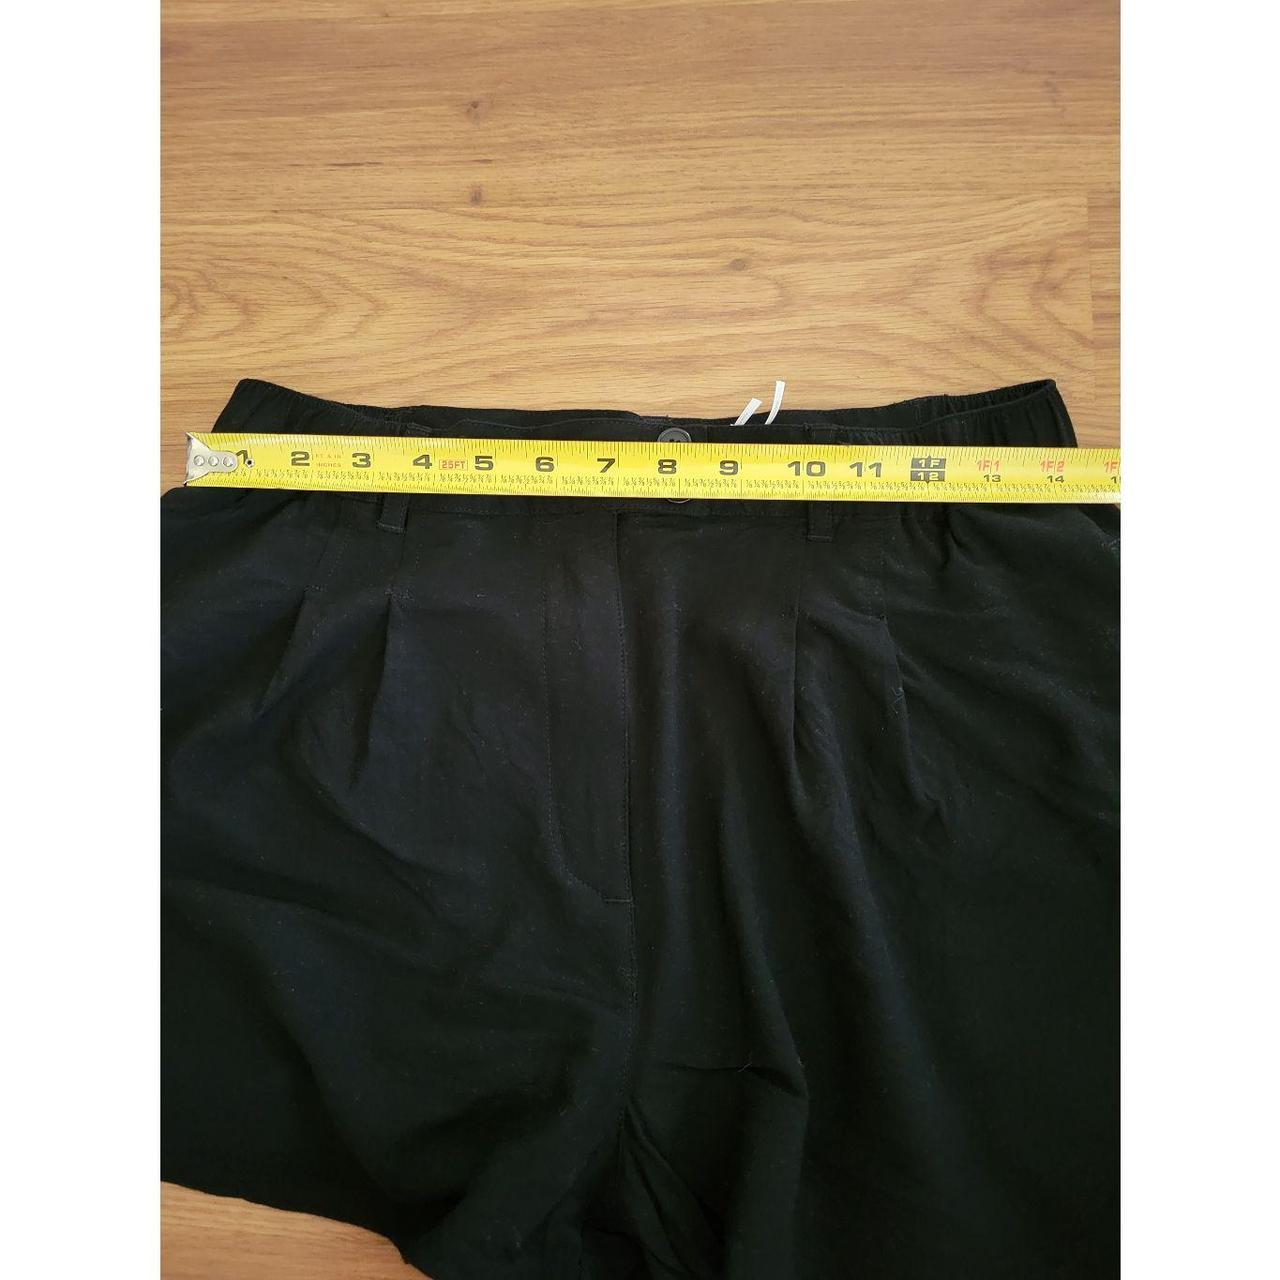 Product Image 3 - Kimchi Blue, pleated shorts. Lightweight,